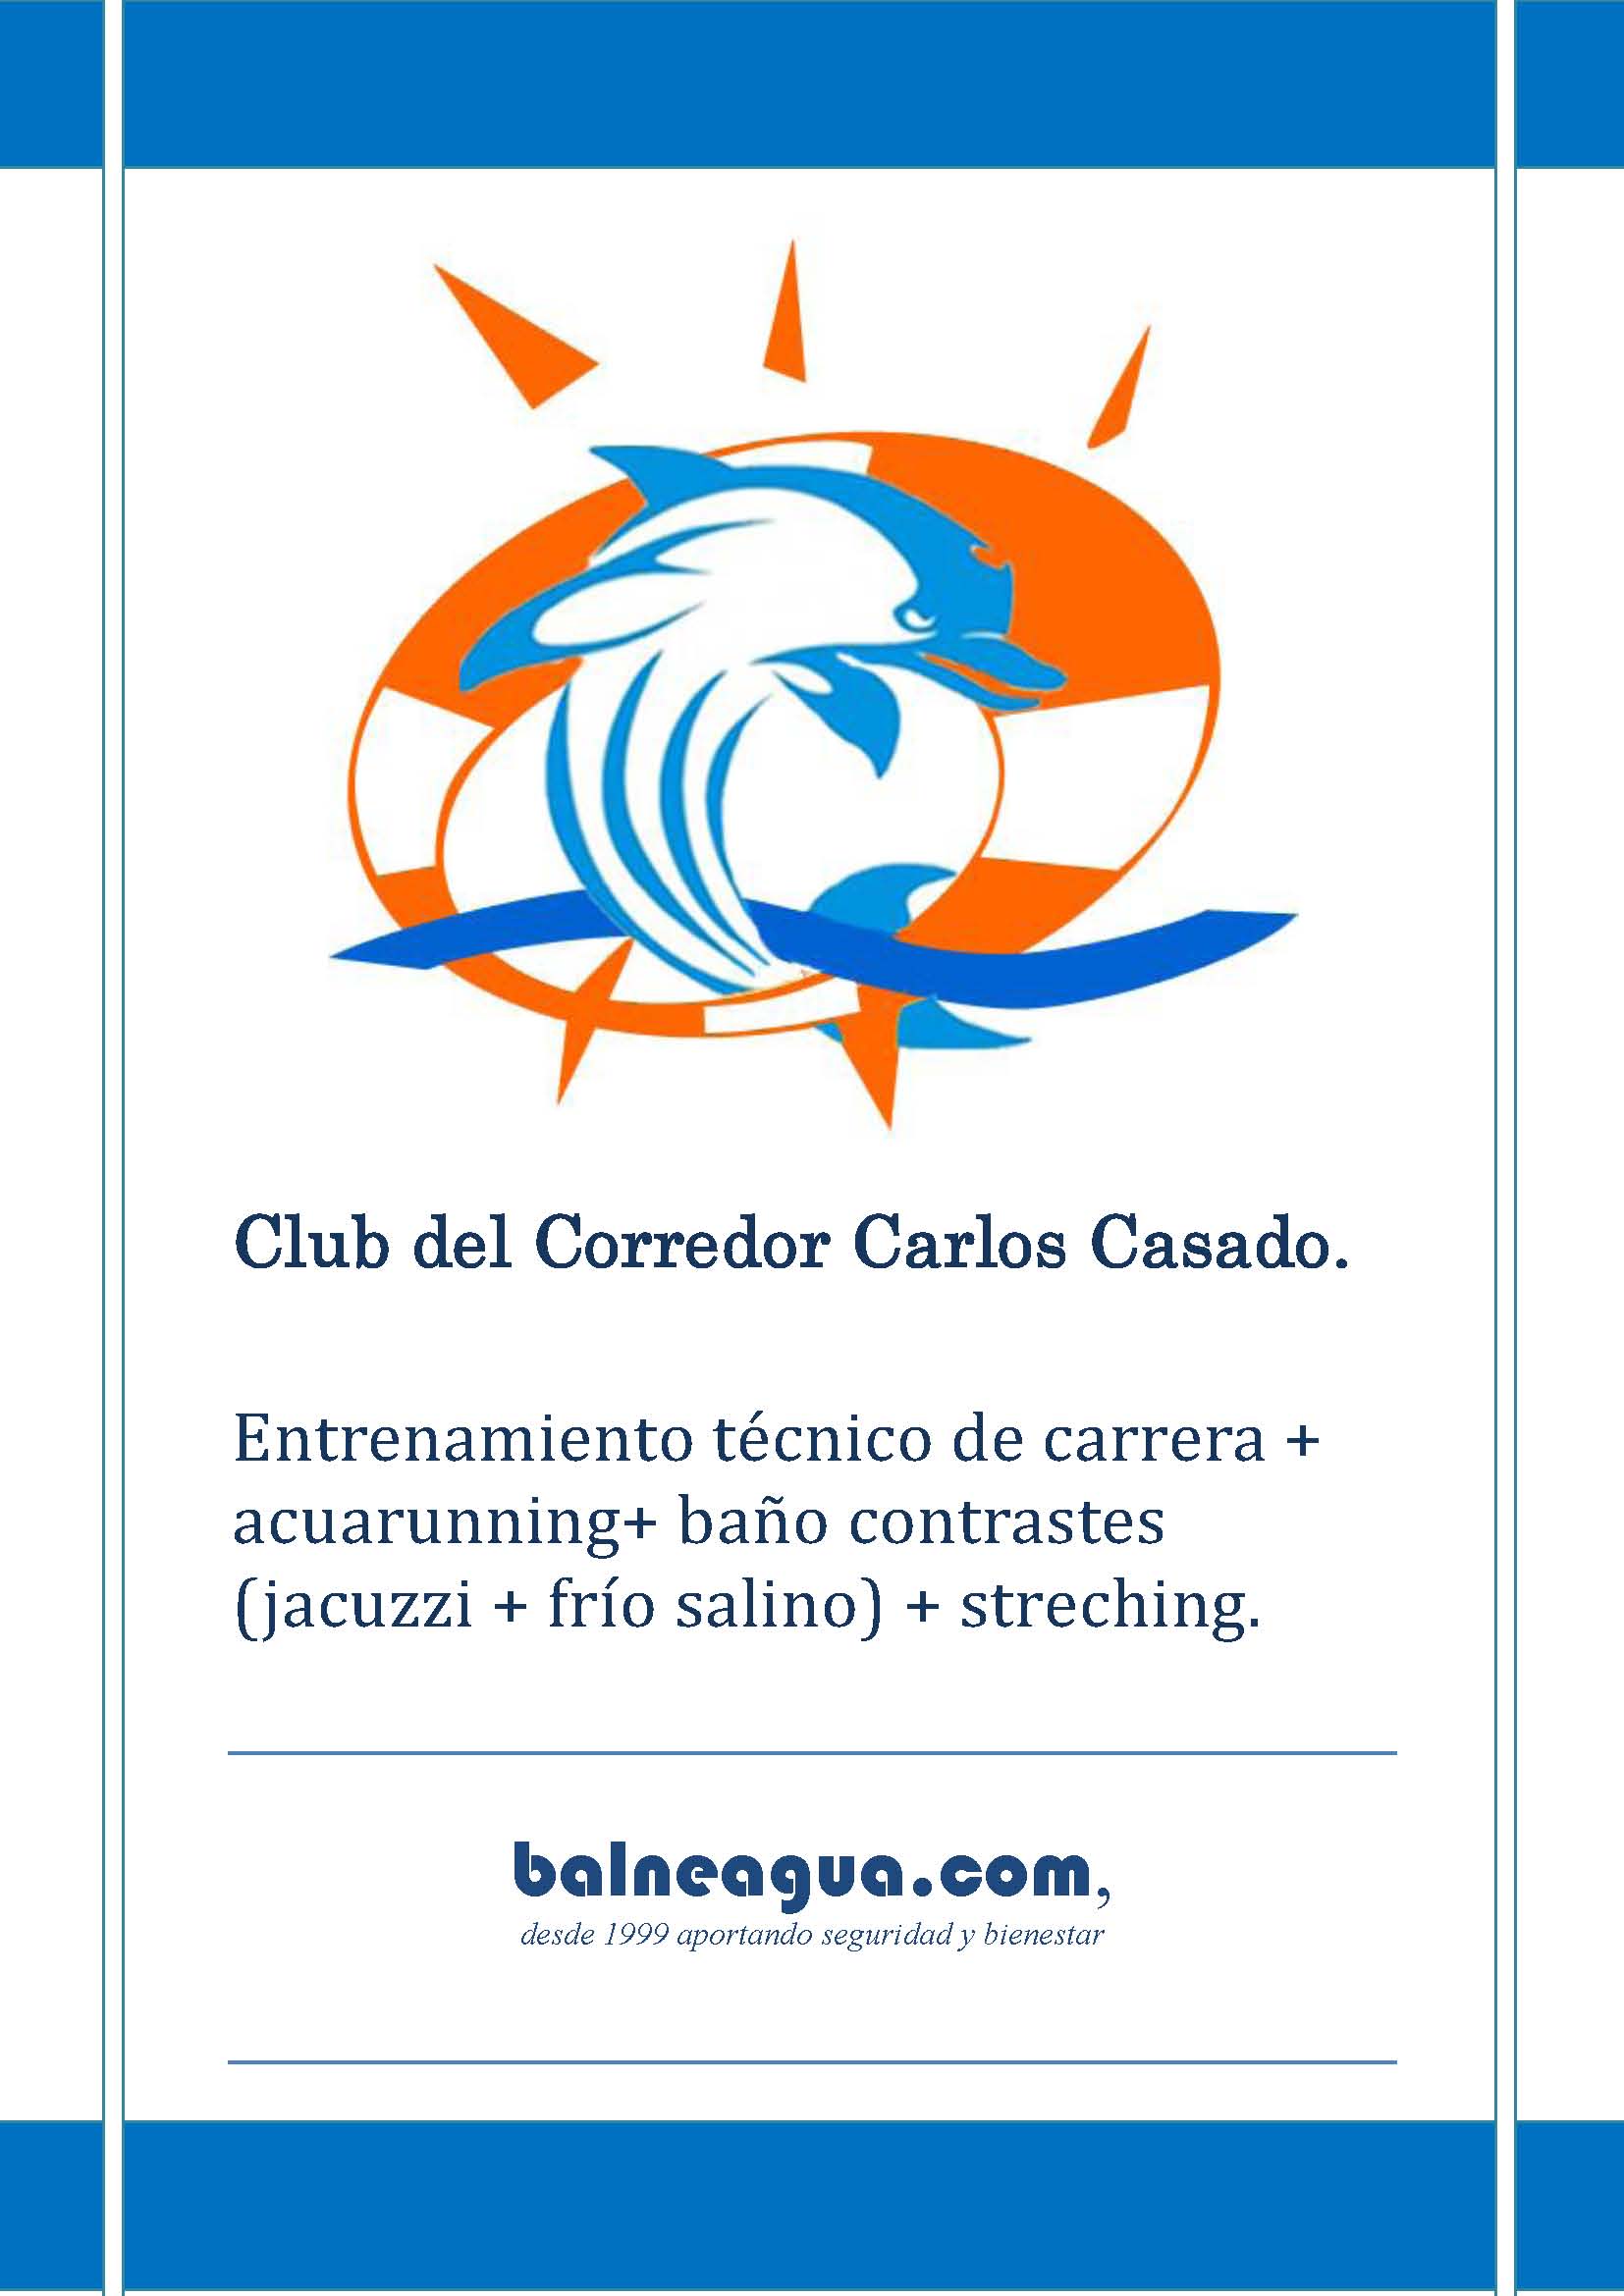 Club del Corredor “Carlos Casado”